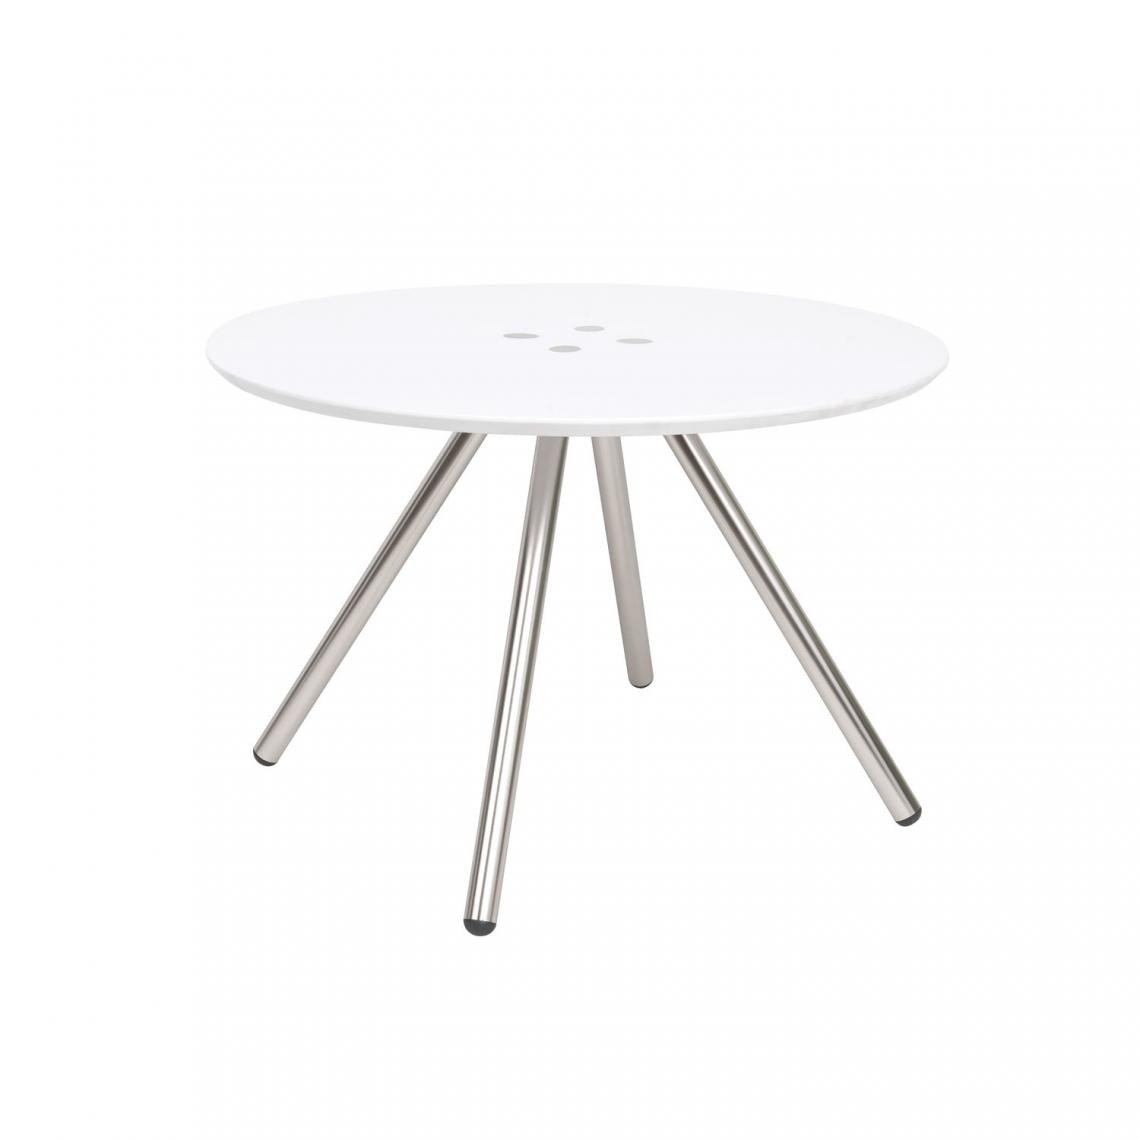 Leitmotiv - Table basse ronde Sliced - 4 pieds chromés - Diamètre 60 cm x Hauteur 40 cm - Blanc - Tables basses